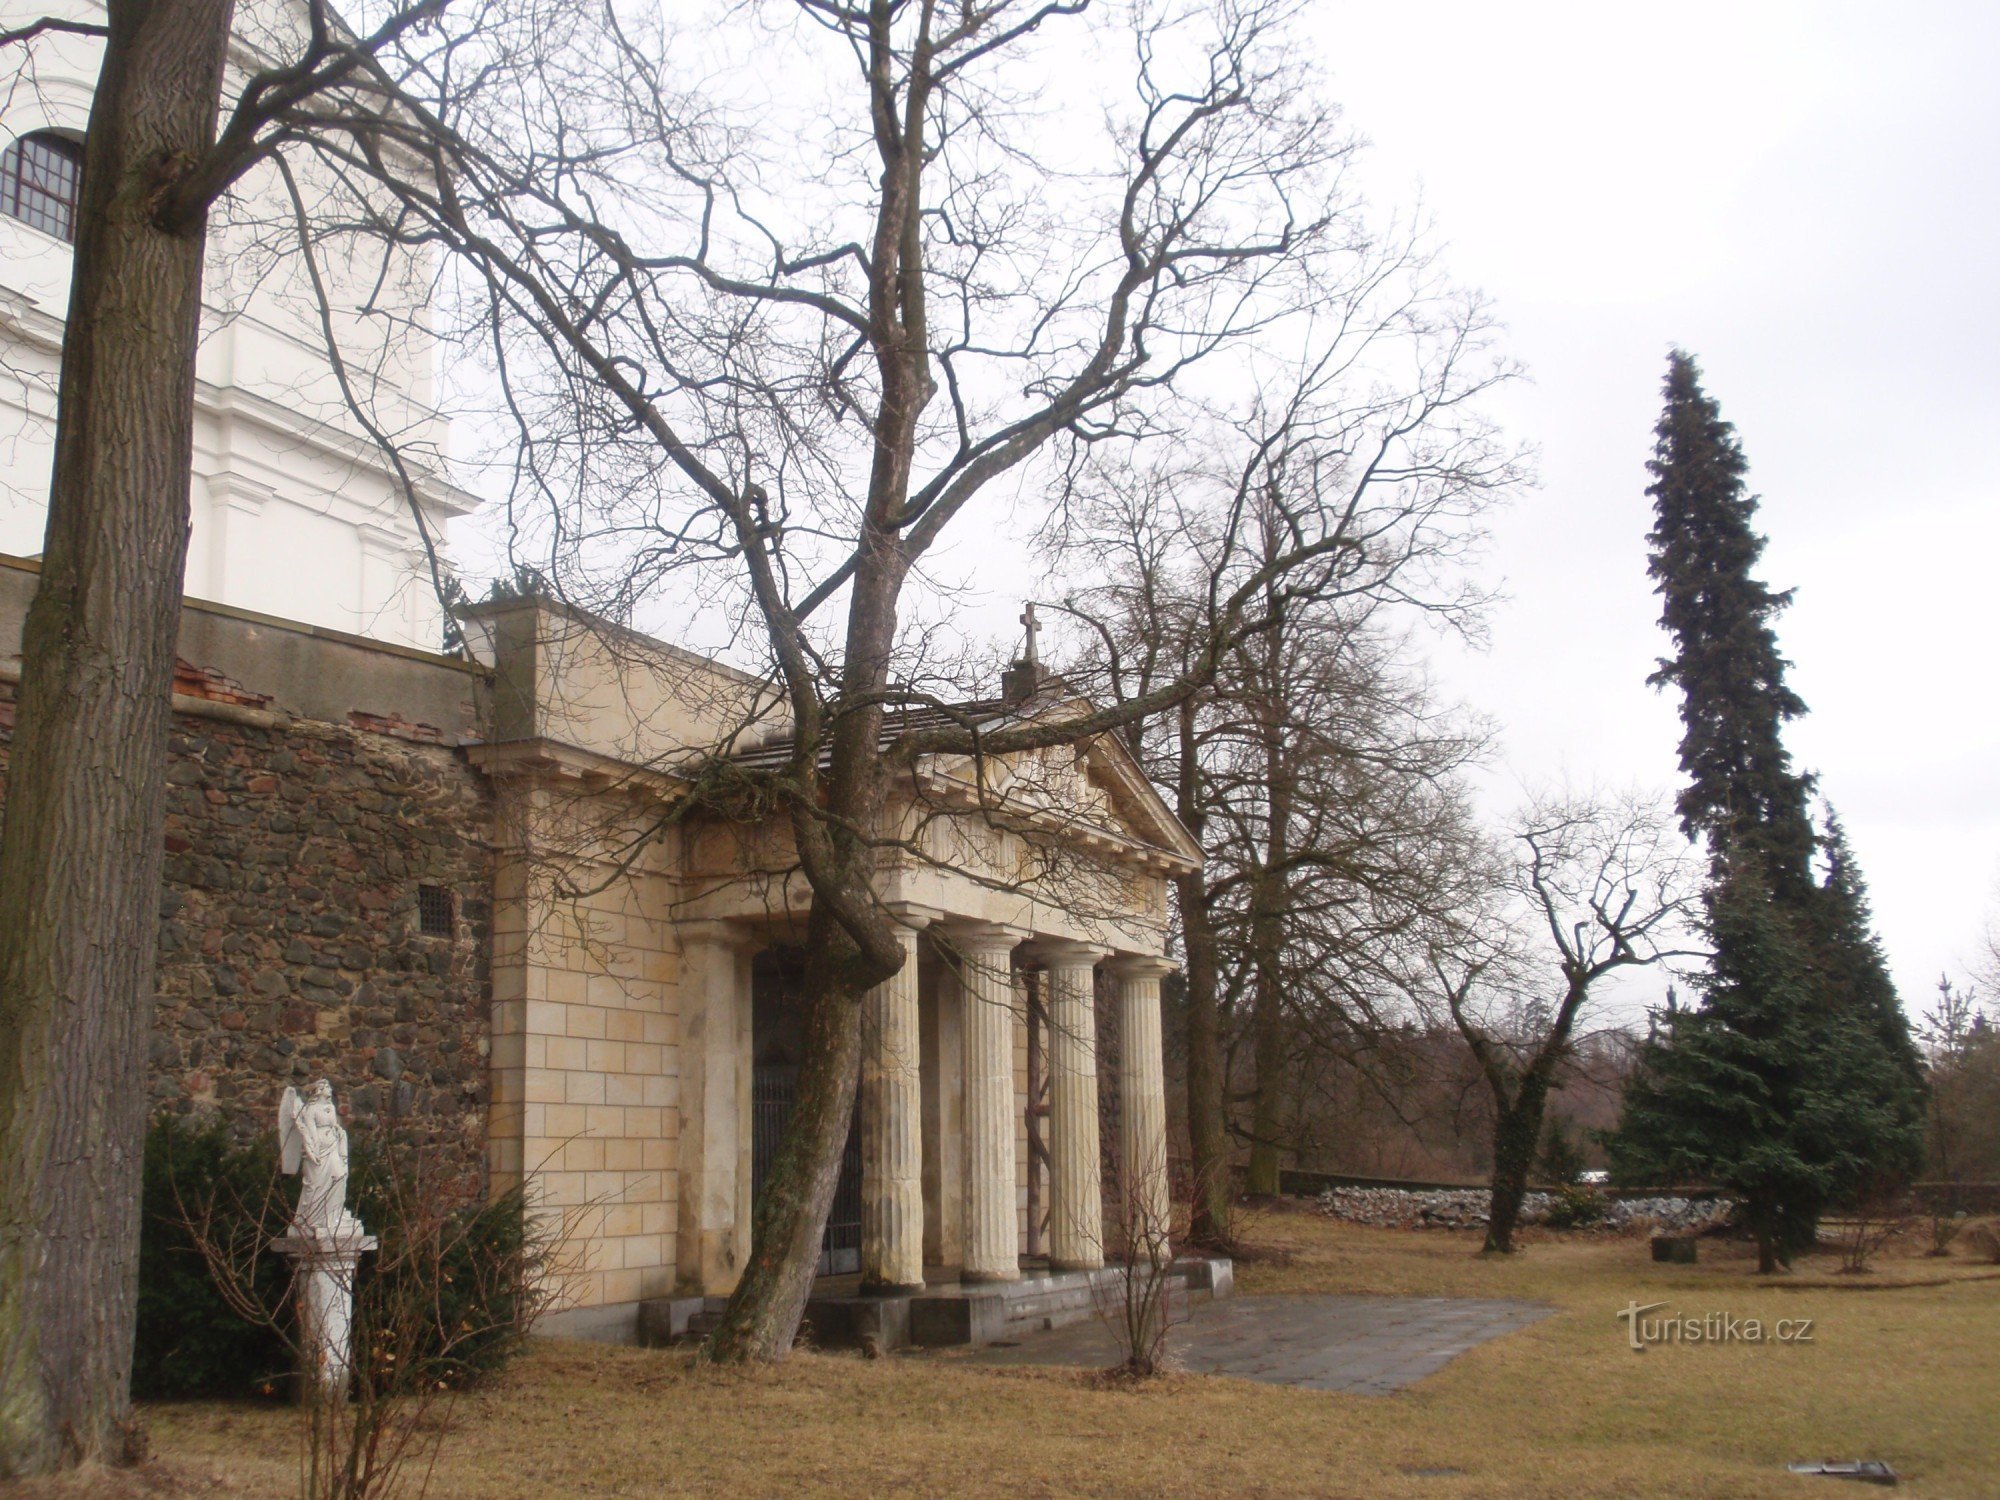 Могила Ліхтенштейна у Вранові поблизу Брно